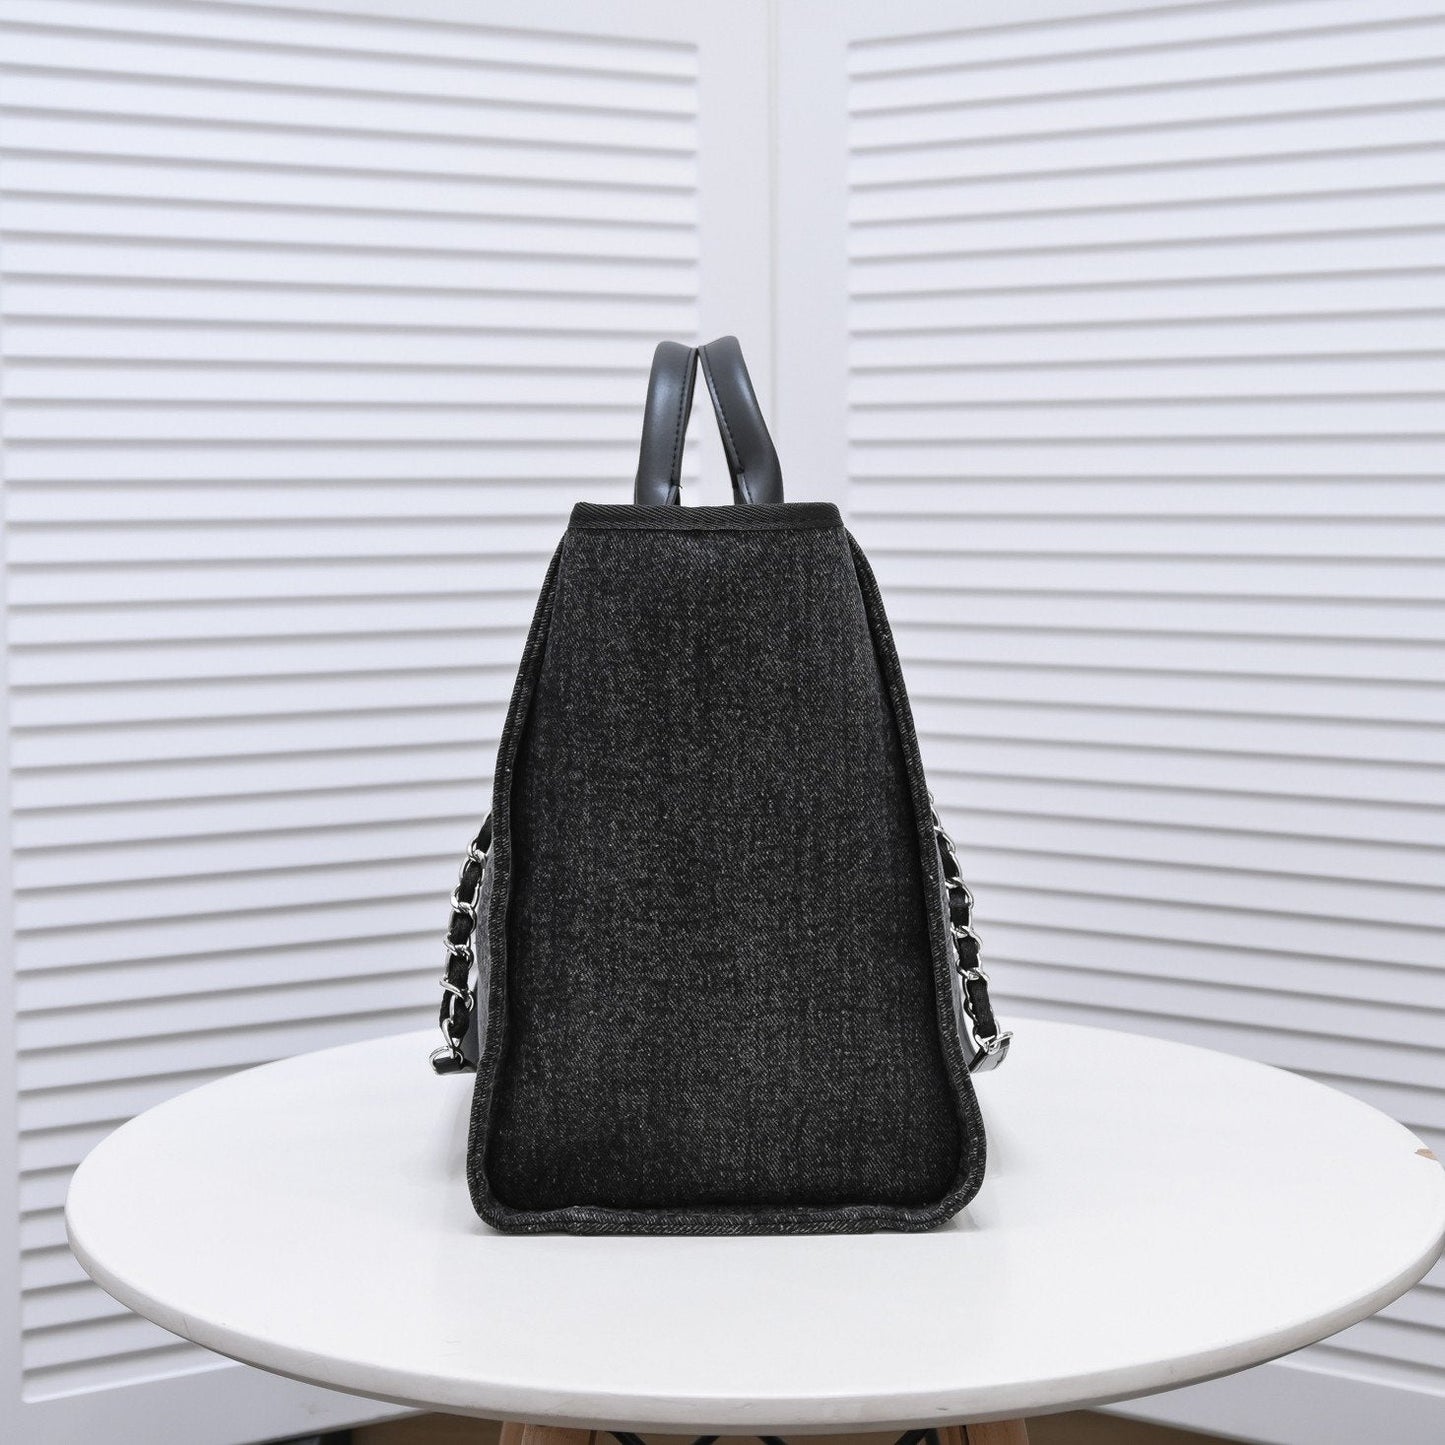 Designer Handbags CL 235